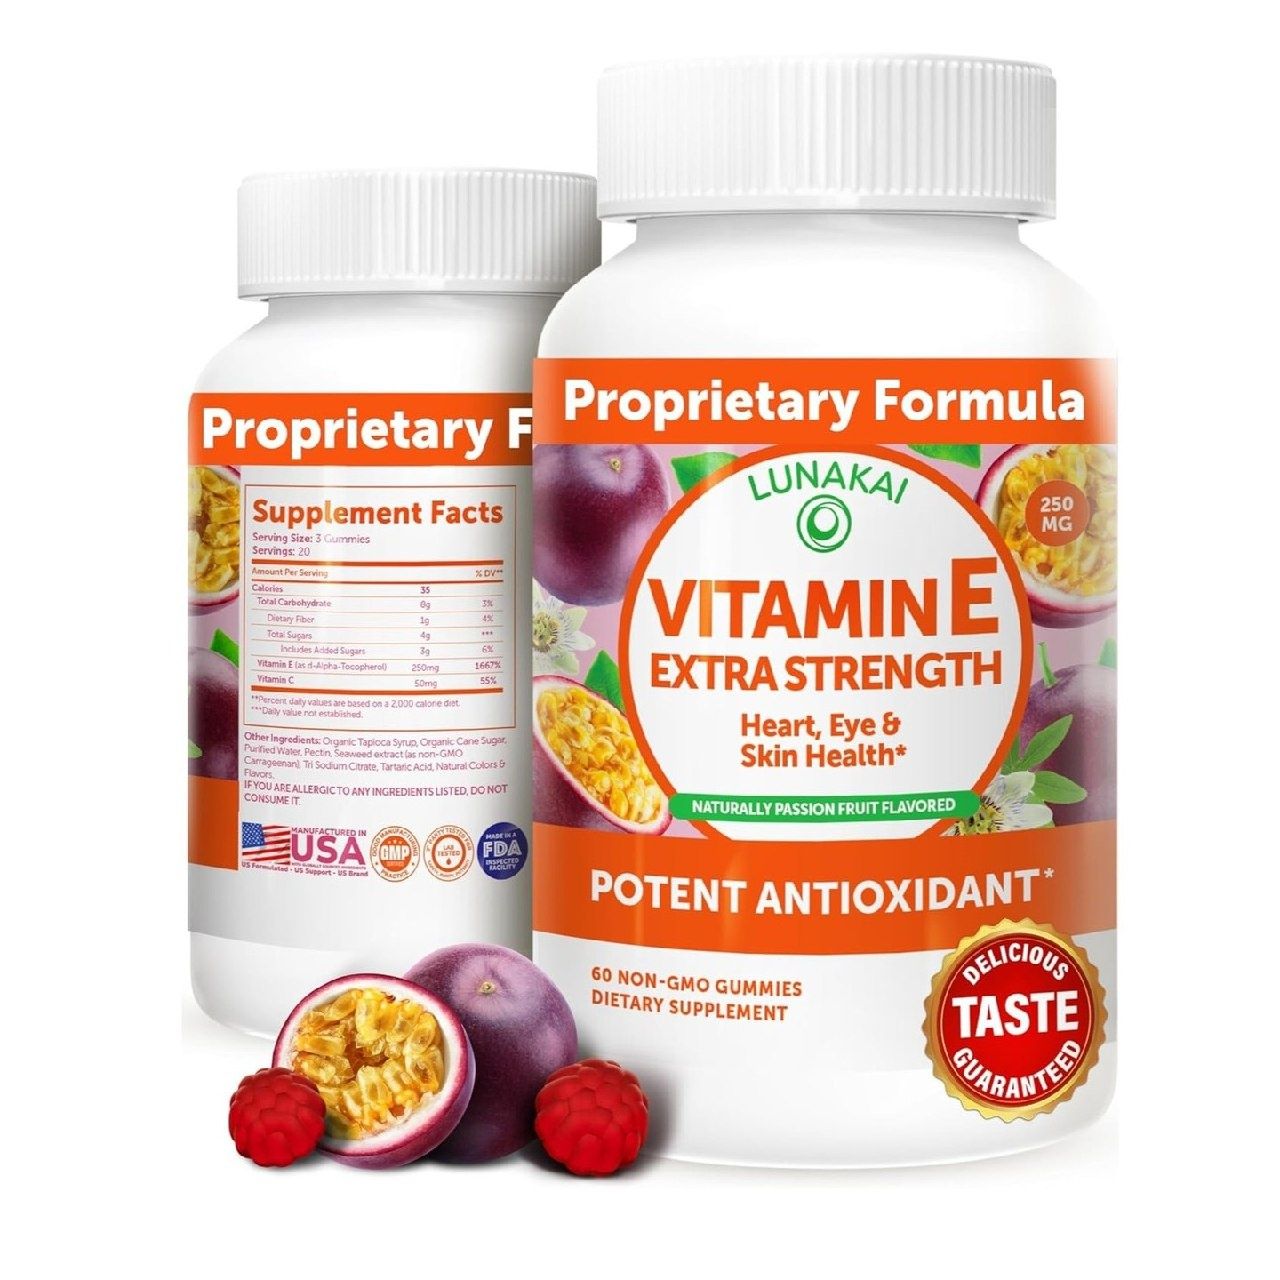 Vitamin E Gummies with Vitamin C - Tastiest Proprietary Formula - 250m